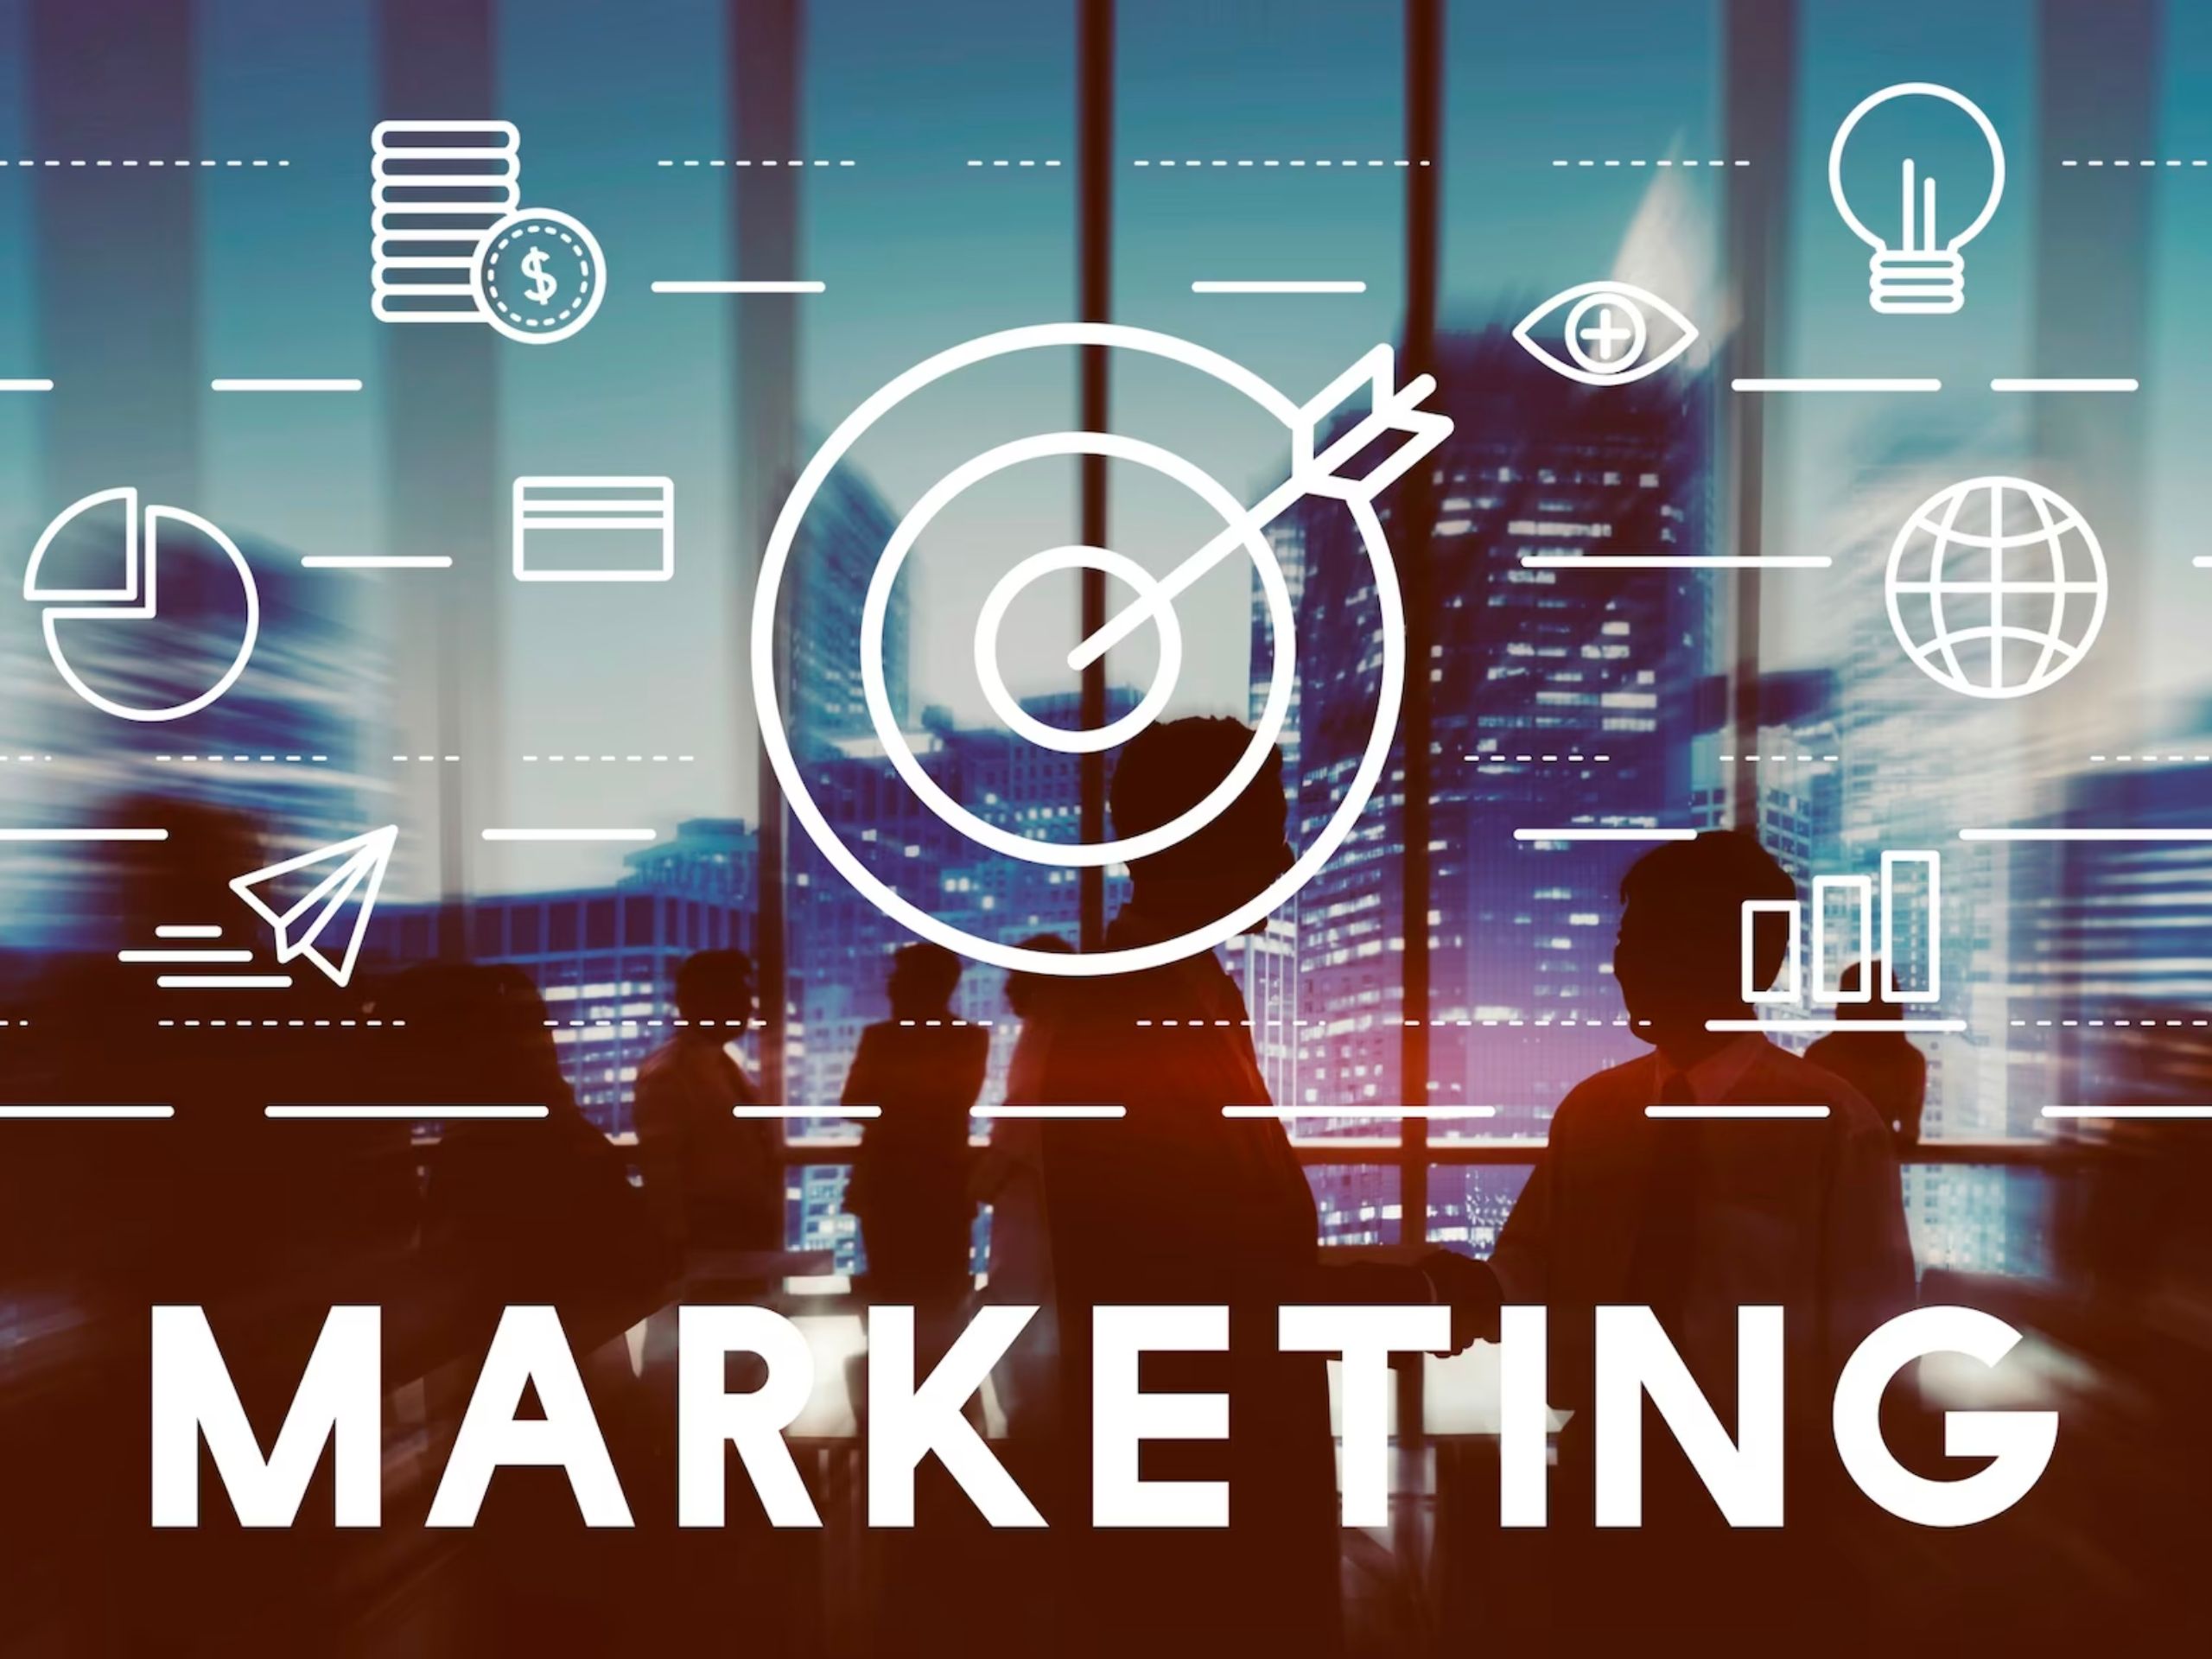 Cách phần mềm quản lý marketing giúp doanh nghiệp nắm bắt được thị trường và cạnh tranh một cách hiệu quả